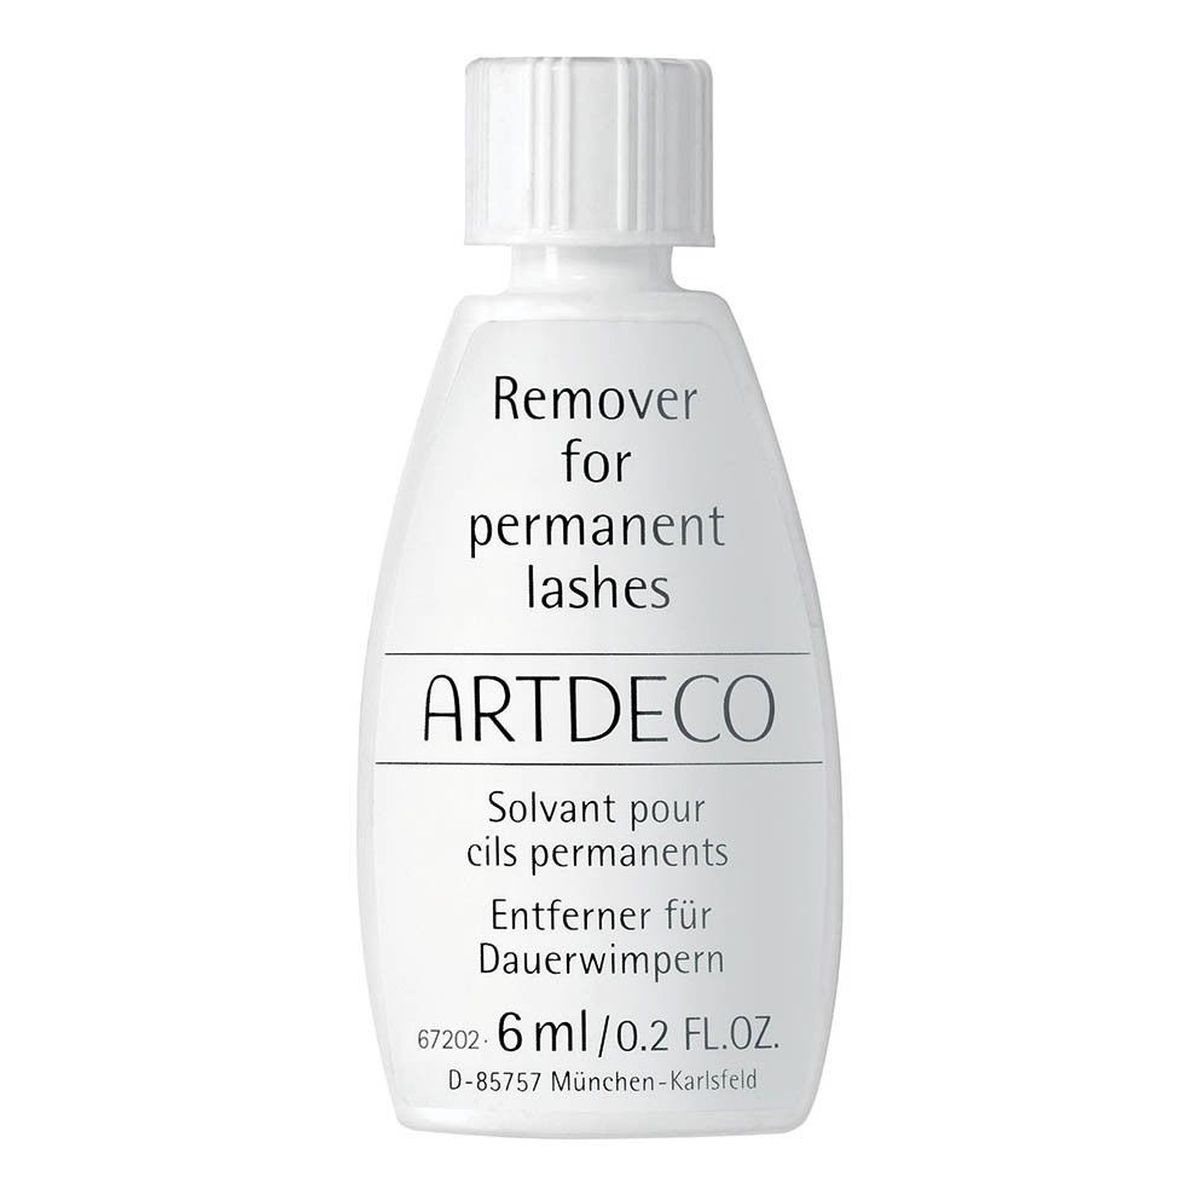 ArtDeco Remover For Permanent Lashes płyn do usuwania sztucznych rzęs 6ml